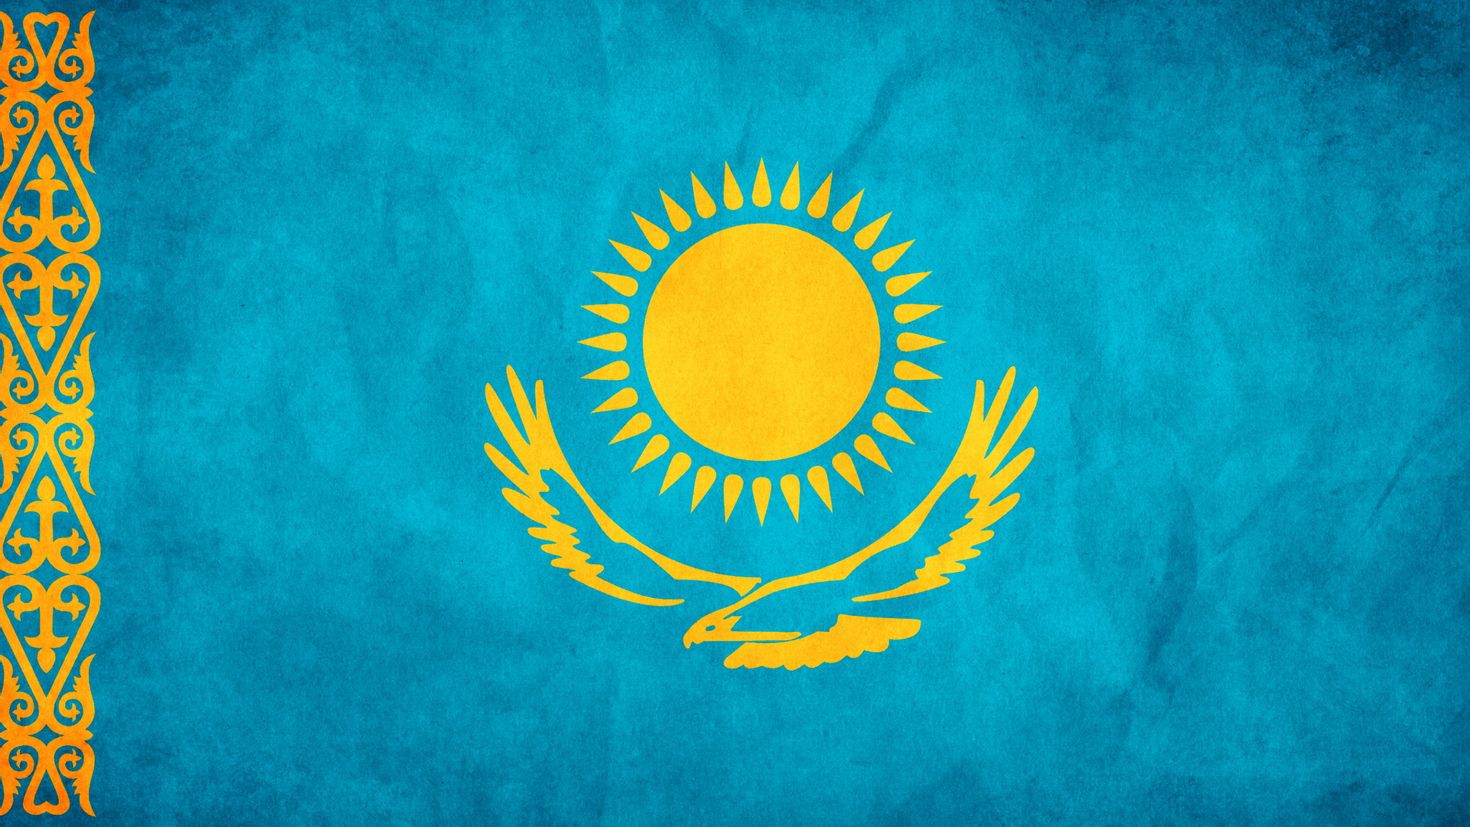 картинки про казахский язык